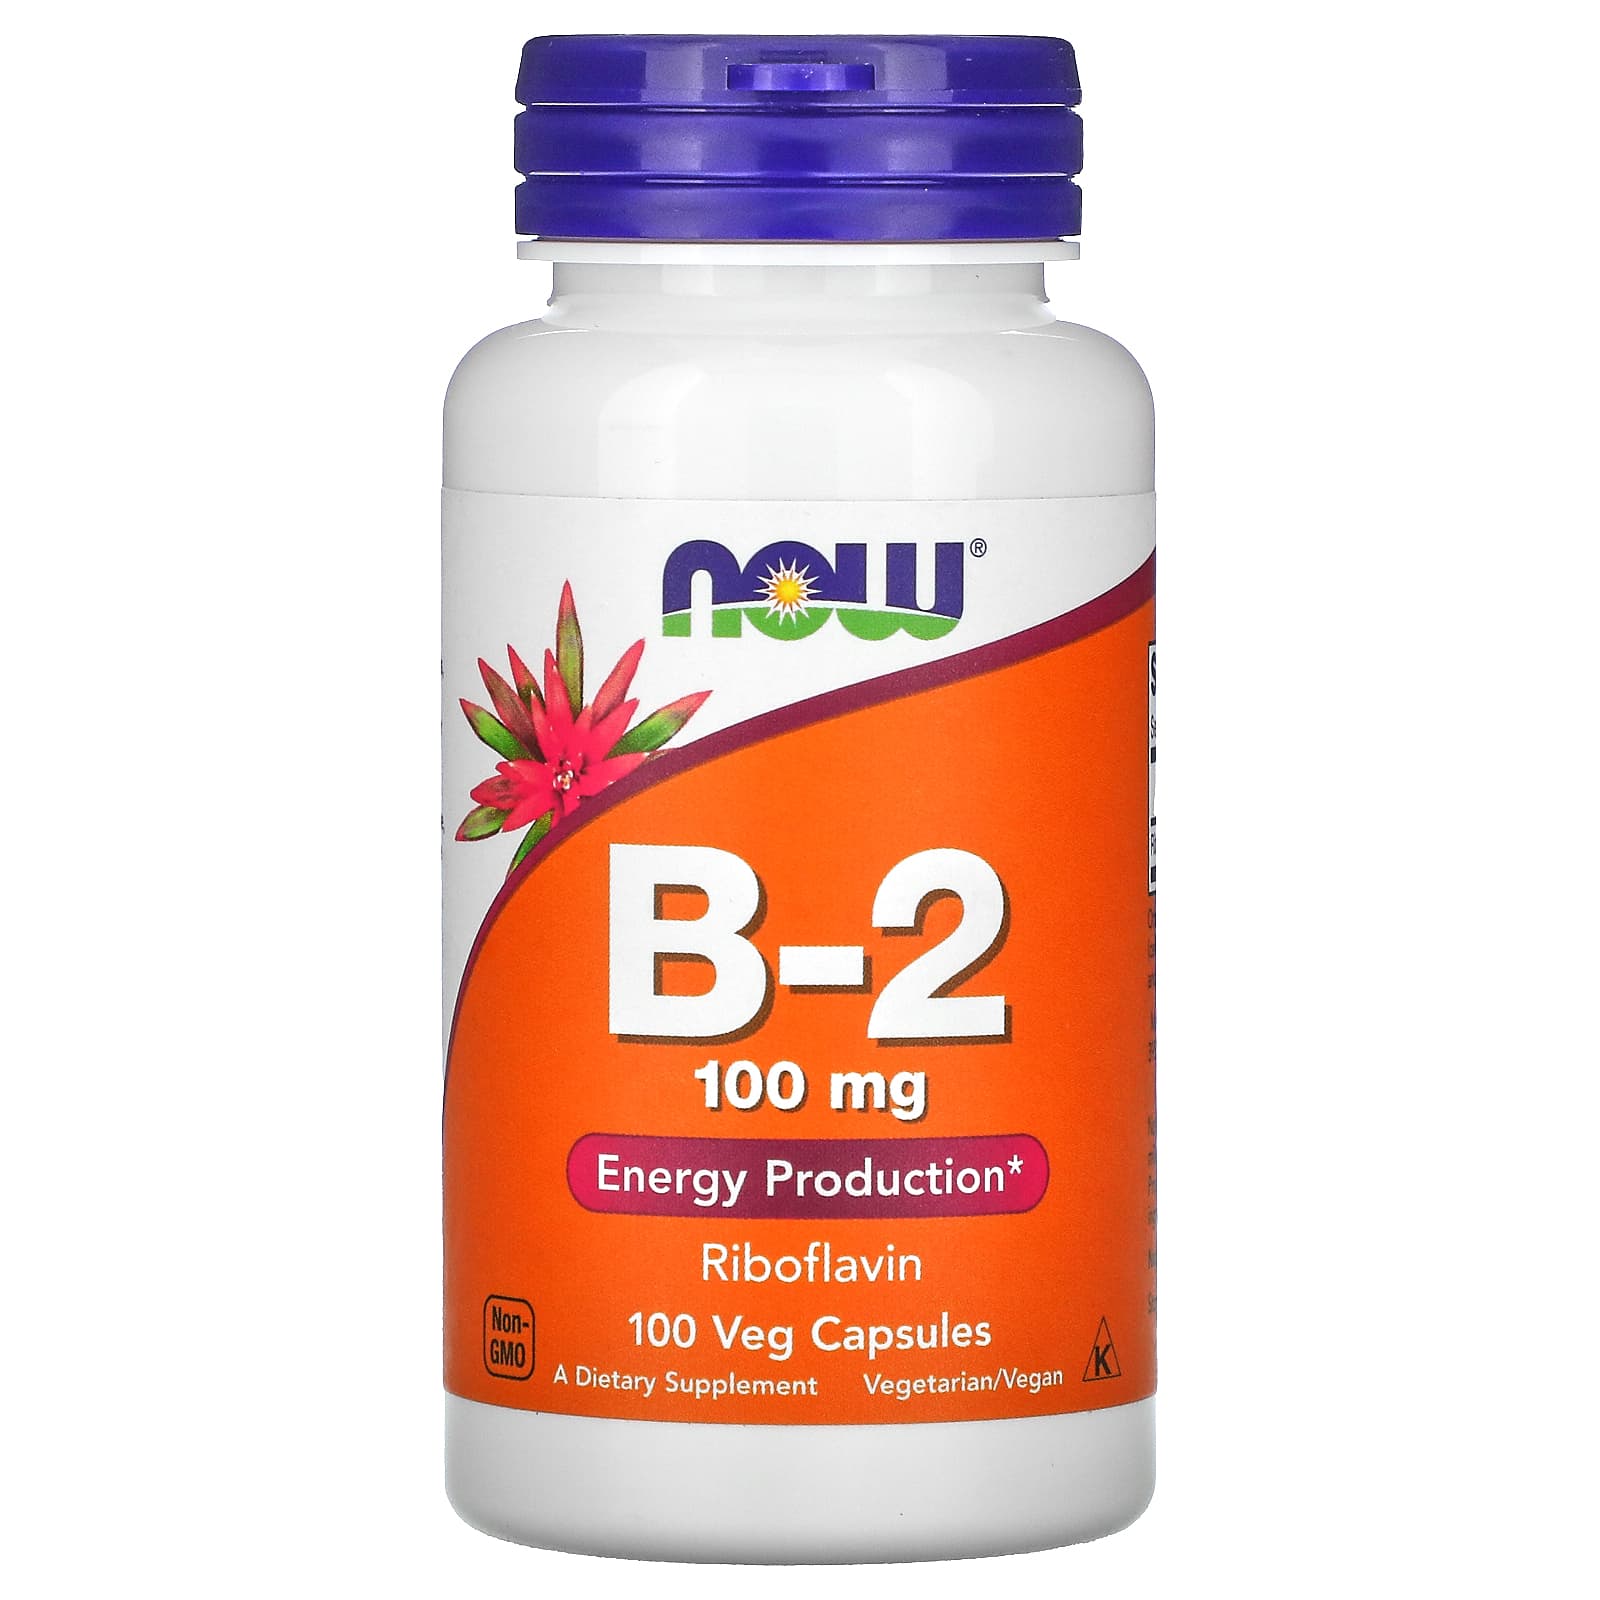 605円 人気大割引 2個セット ナウフーズ ビタミンB2 100mg 100粒 NOW Foods Vitamin B-2 100 mg Veg Capsules